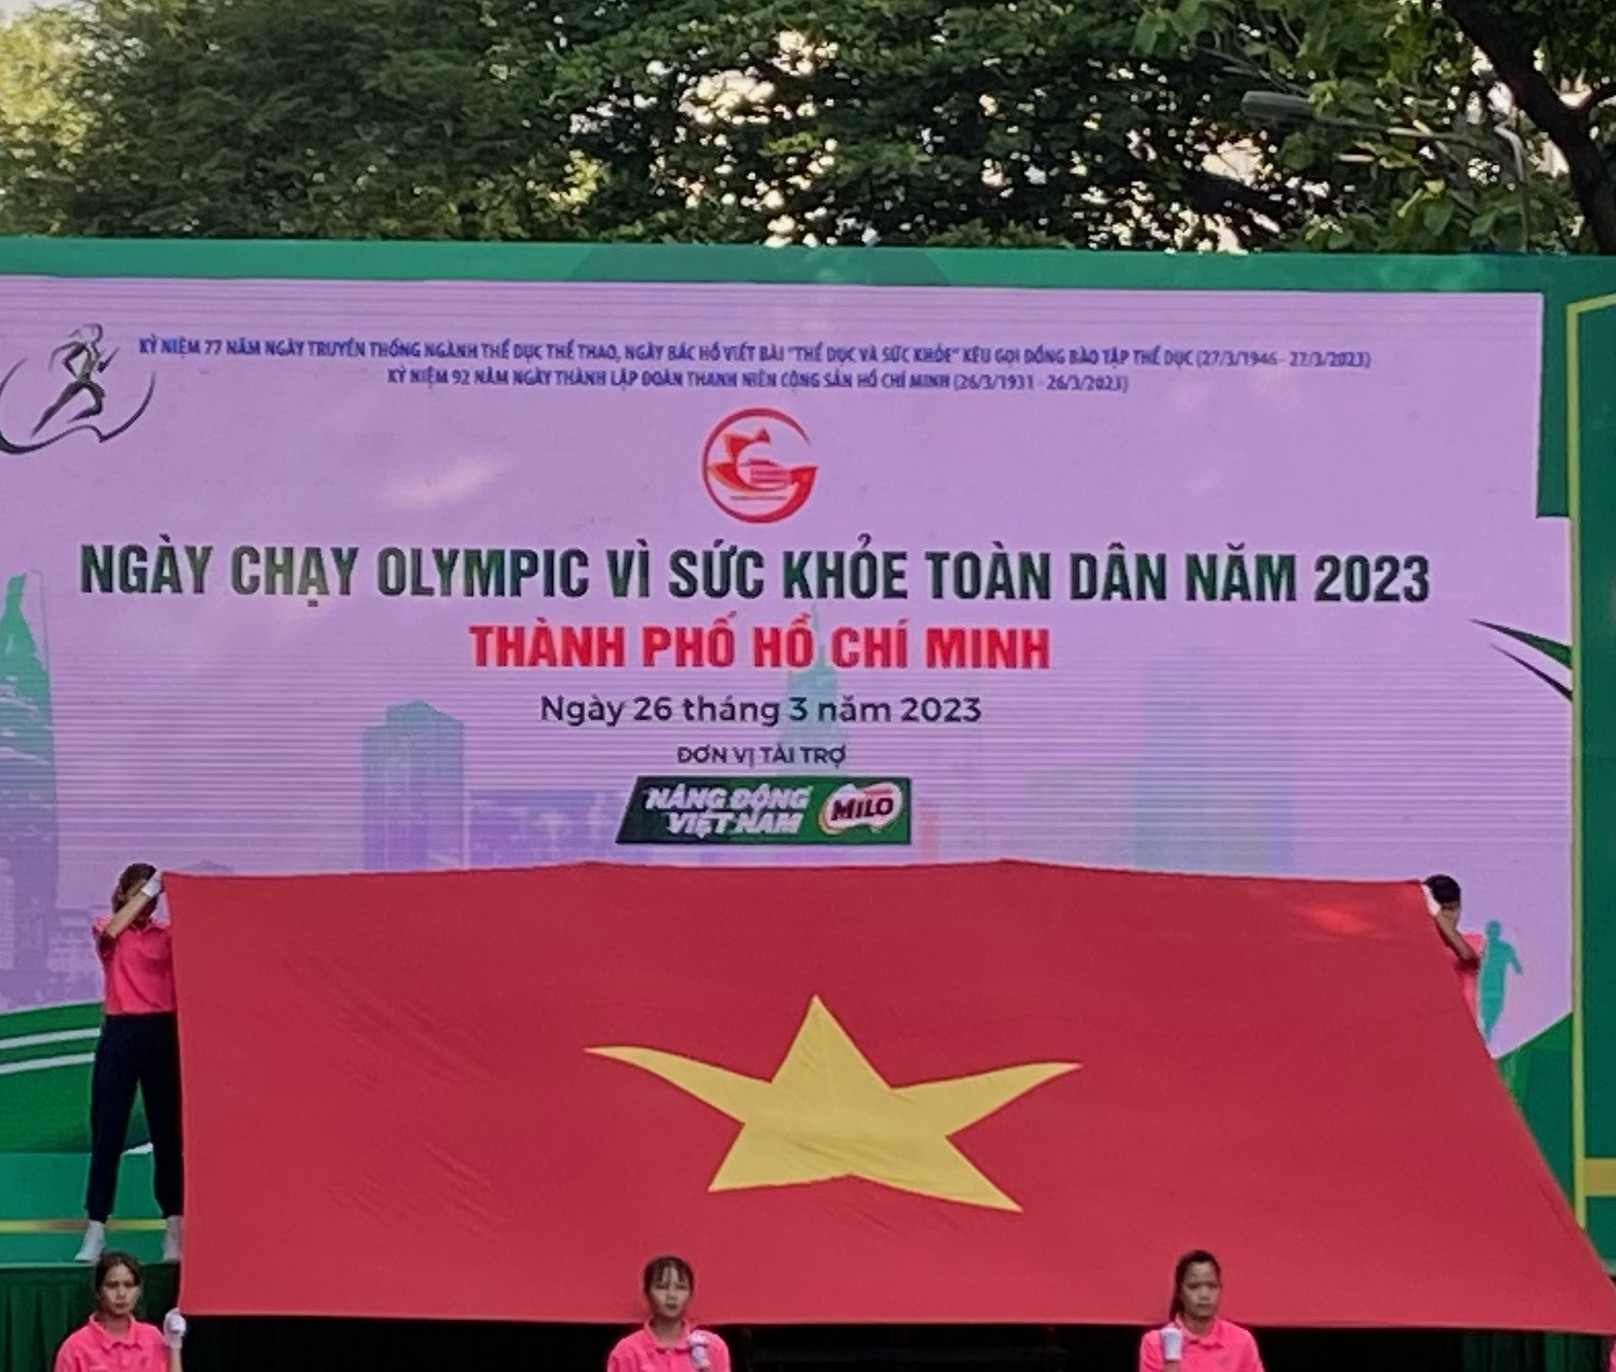 Ngày chạy Olympic vì sức khỏe toàn dân nhằm thiết thực chào mừng kỷ niệm 77 năm Ngày Thể thao Việt Nam (27/3/1946 - 27/3/2023)